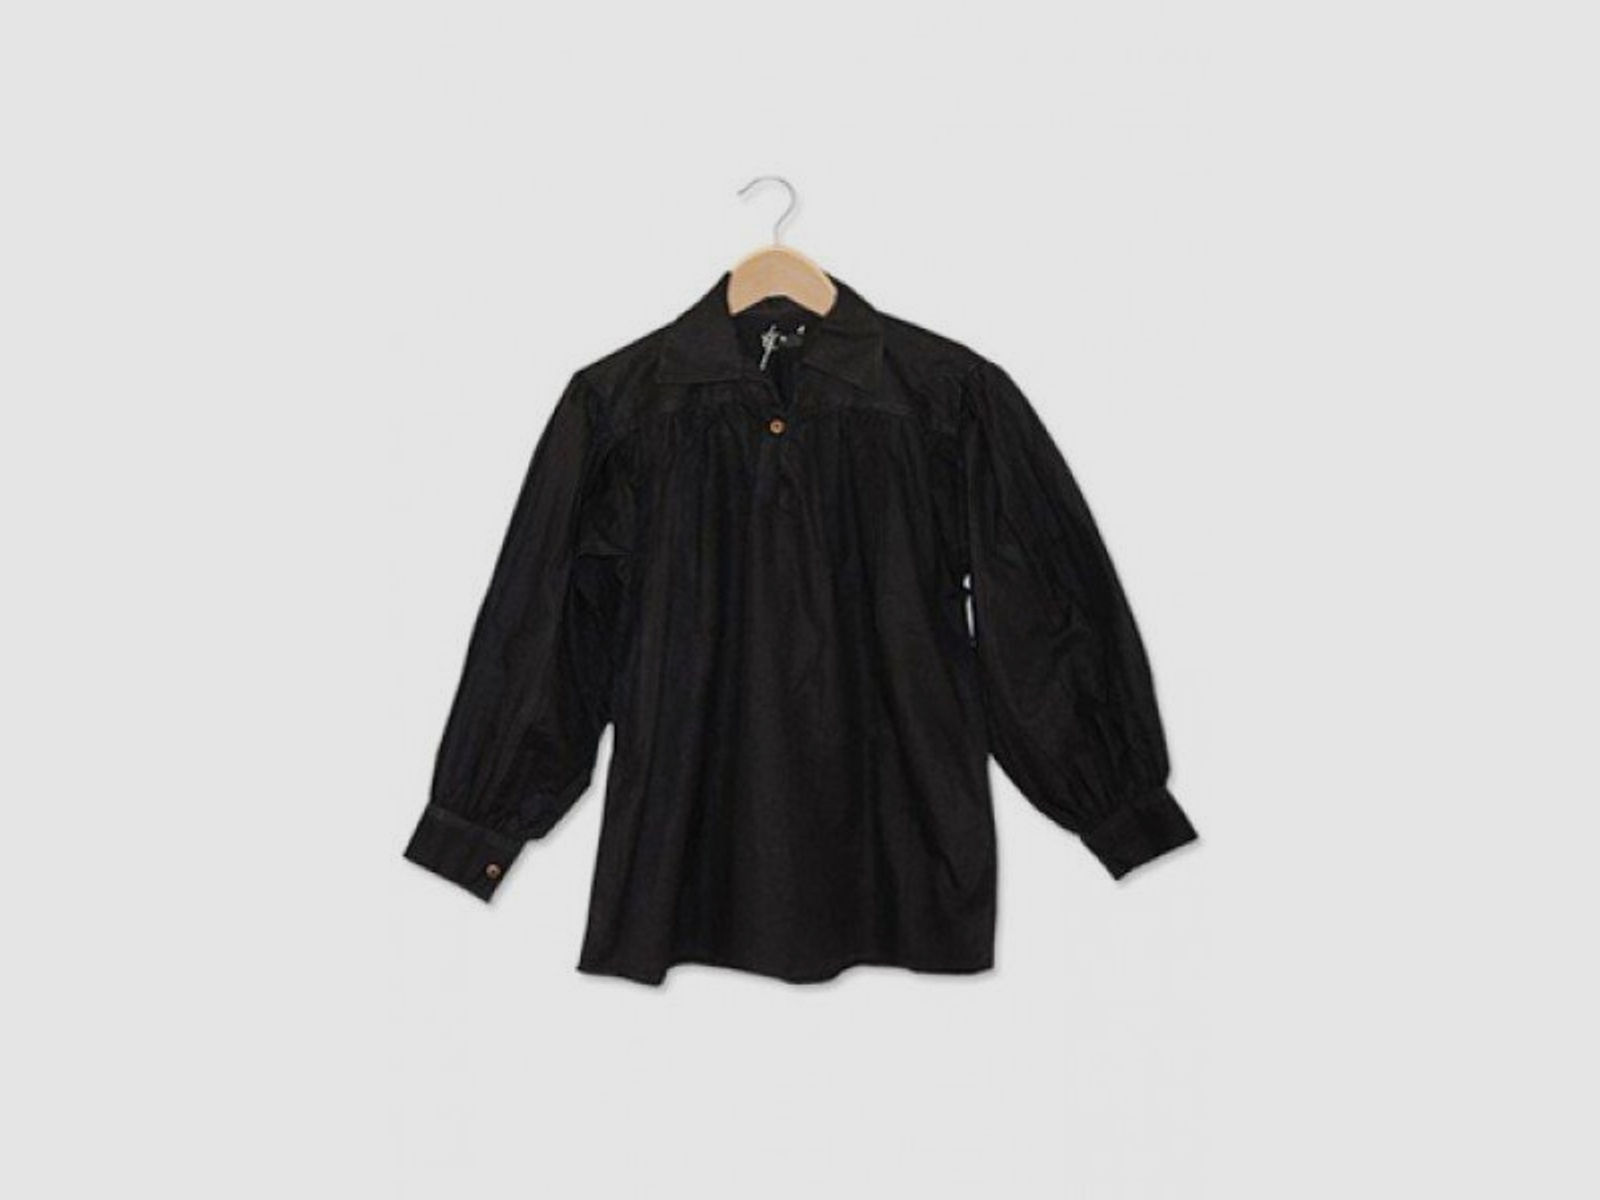 Baumwollhemd mit Kragen und Knopf Ausschnitt - schwarz, Größe XXL | 71461XXL